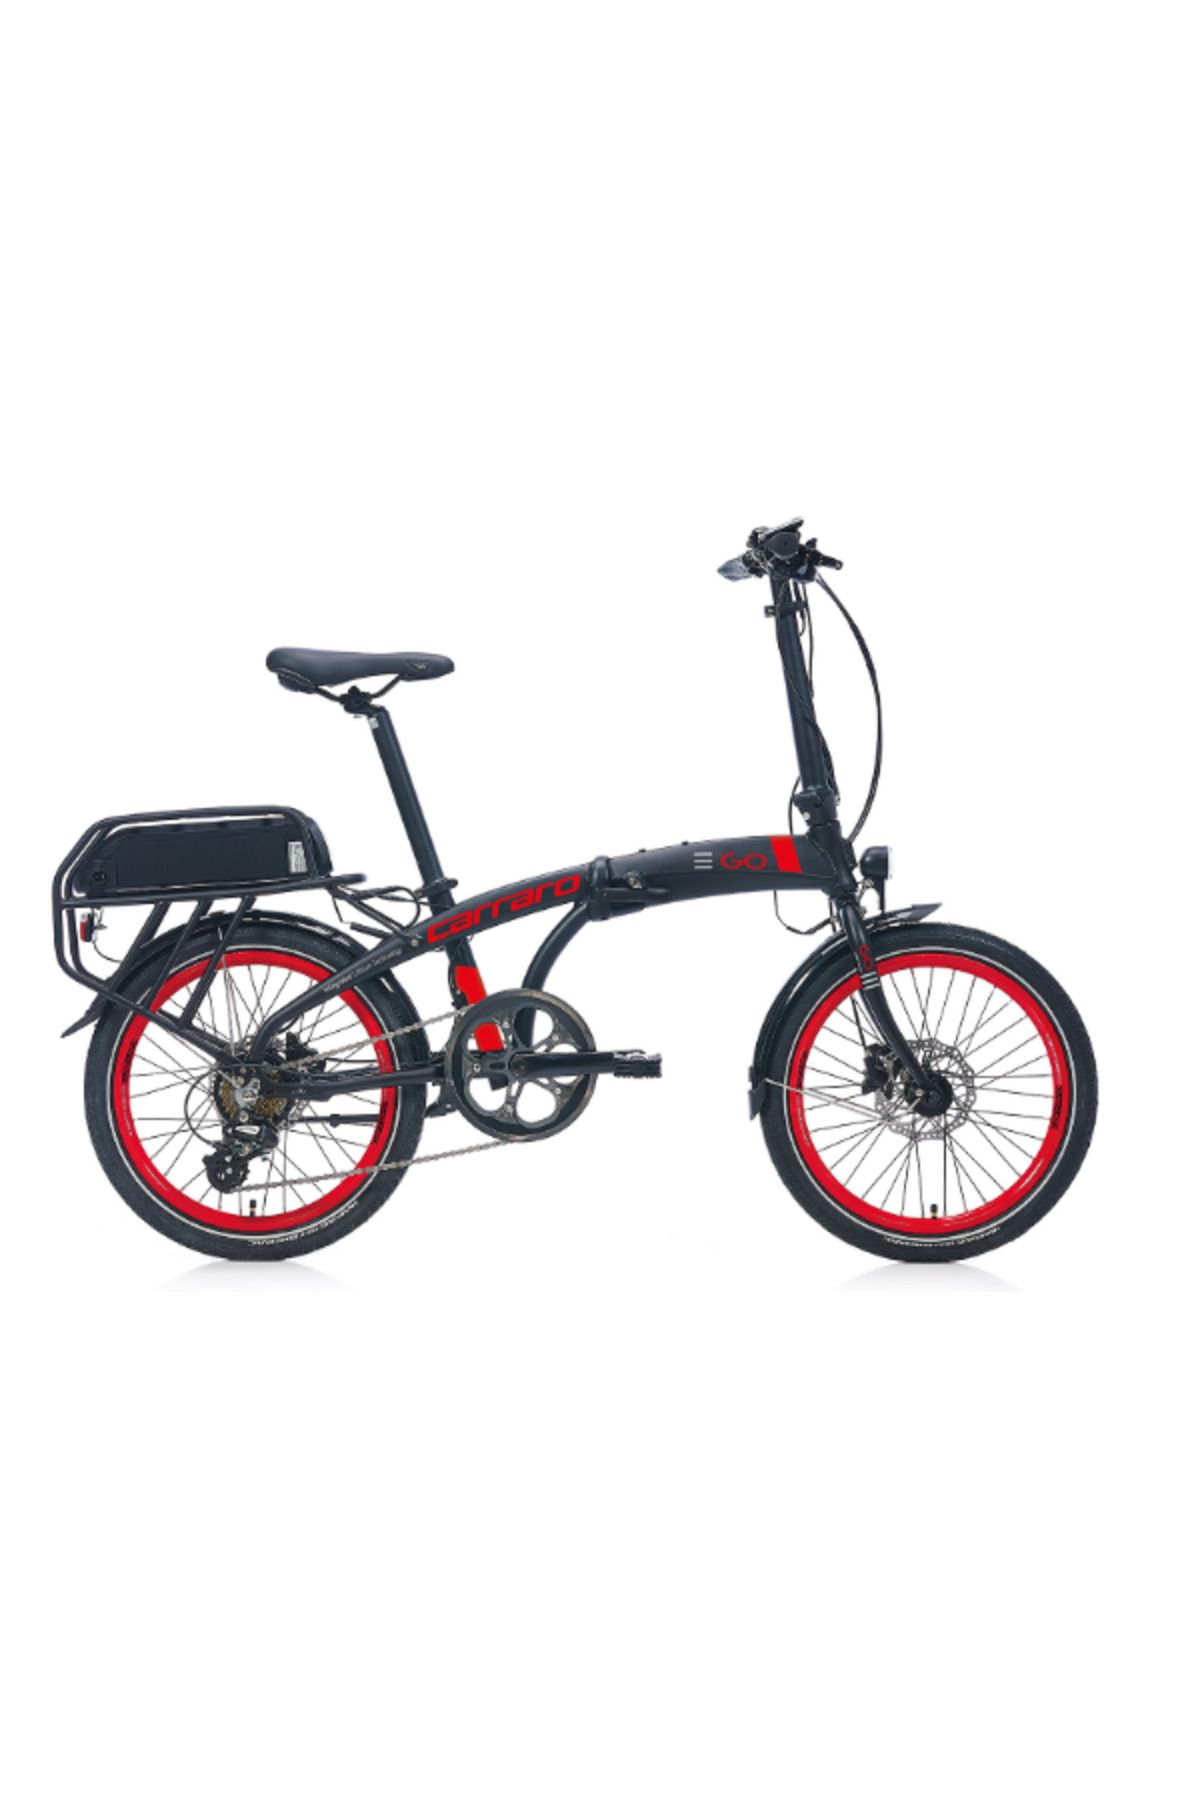 Carraro e-Go Elektrikli Katlanır Bisiklet Siyah-Kırmızı